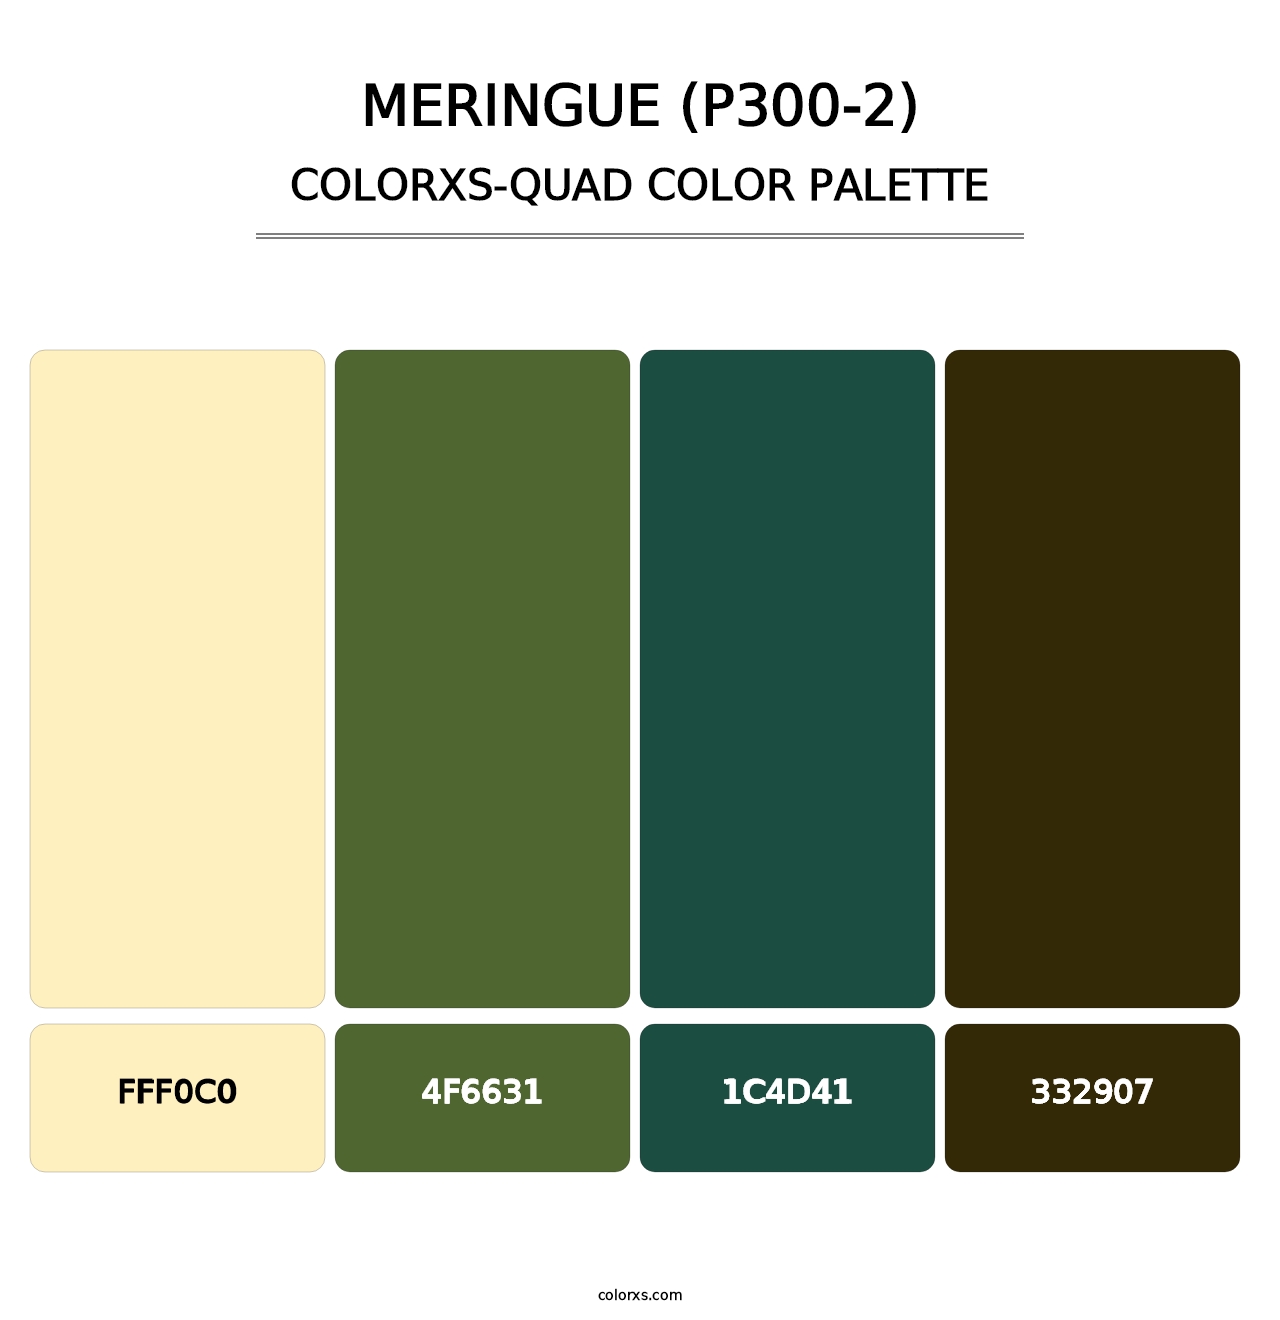 Meringue (P300-2) - Colorxs Quad Palette